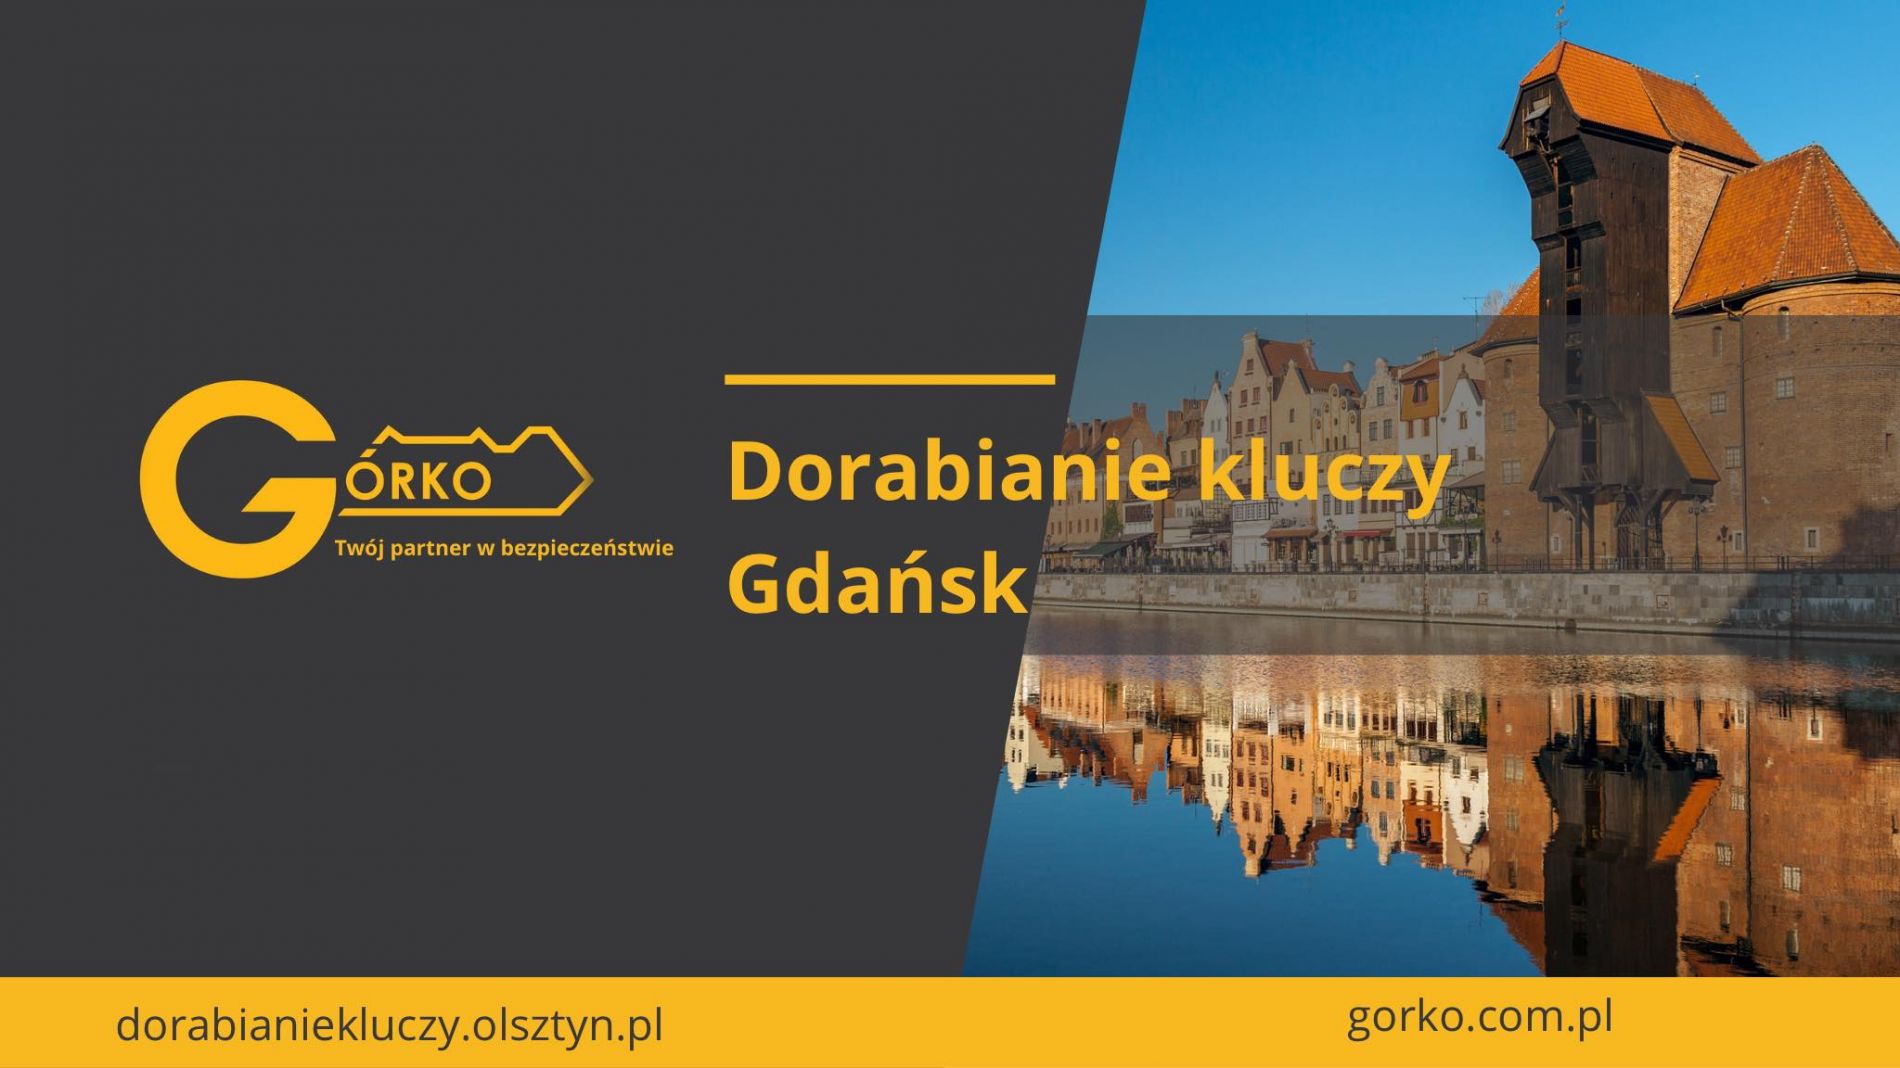 Naprawa stacyjek, zamków i kluczy samochodowych Gdańsk